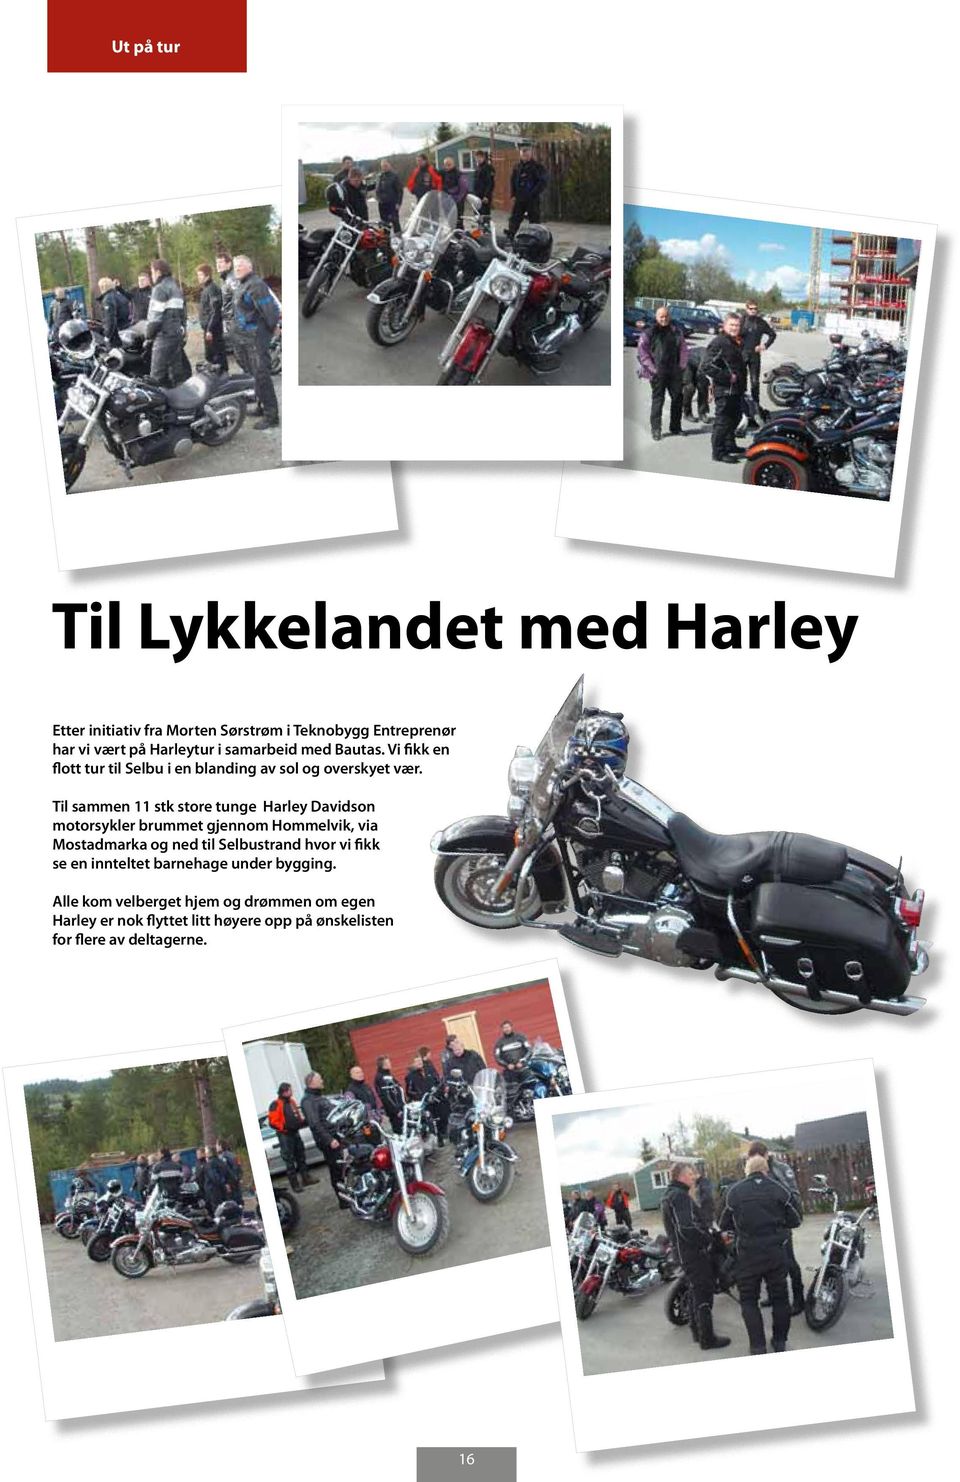 Til sammen 11 stk store tunge Harley Davidson motorsykler brummet gjennom Hommelvik, via Mostadmarka og ned til Selbustrand hvor